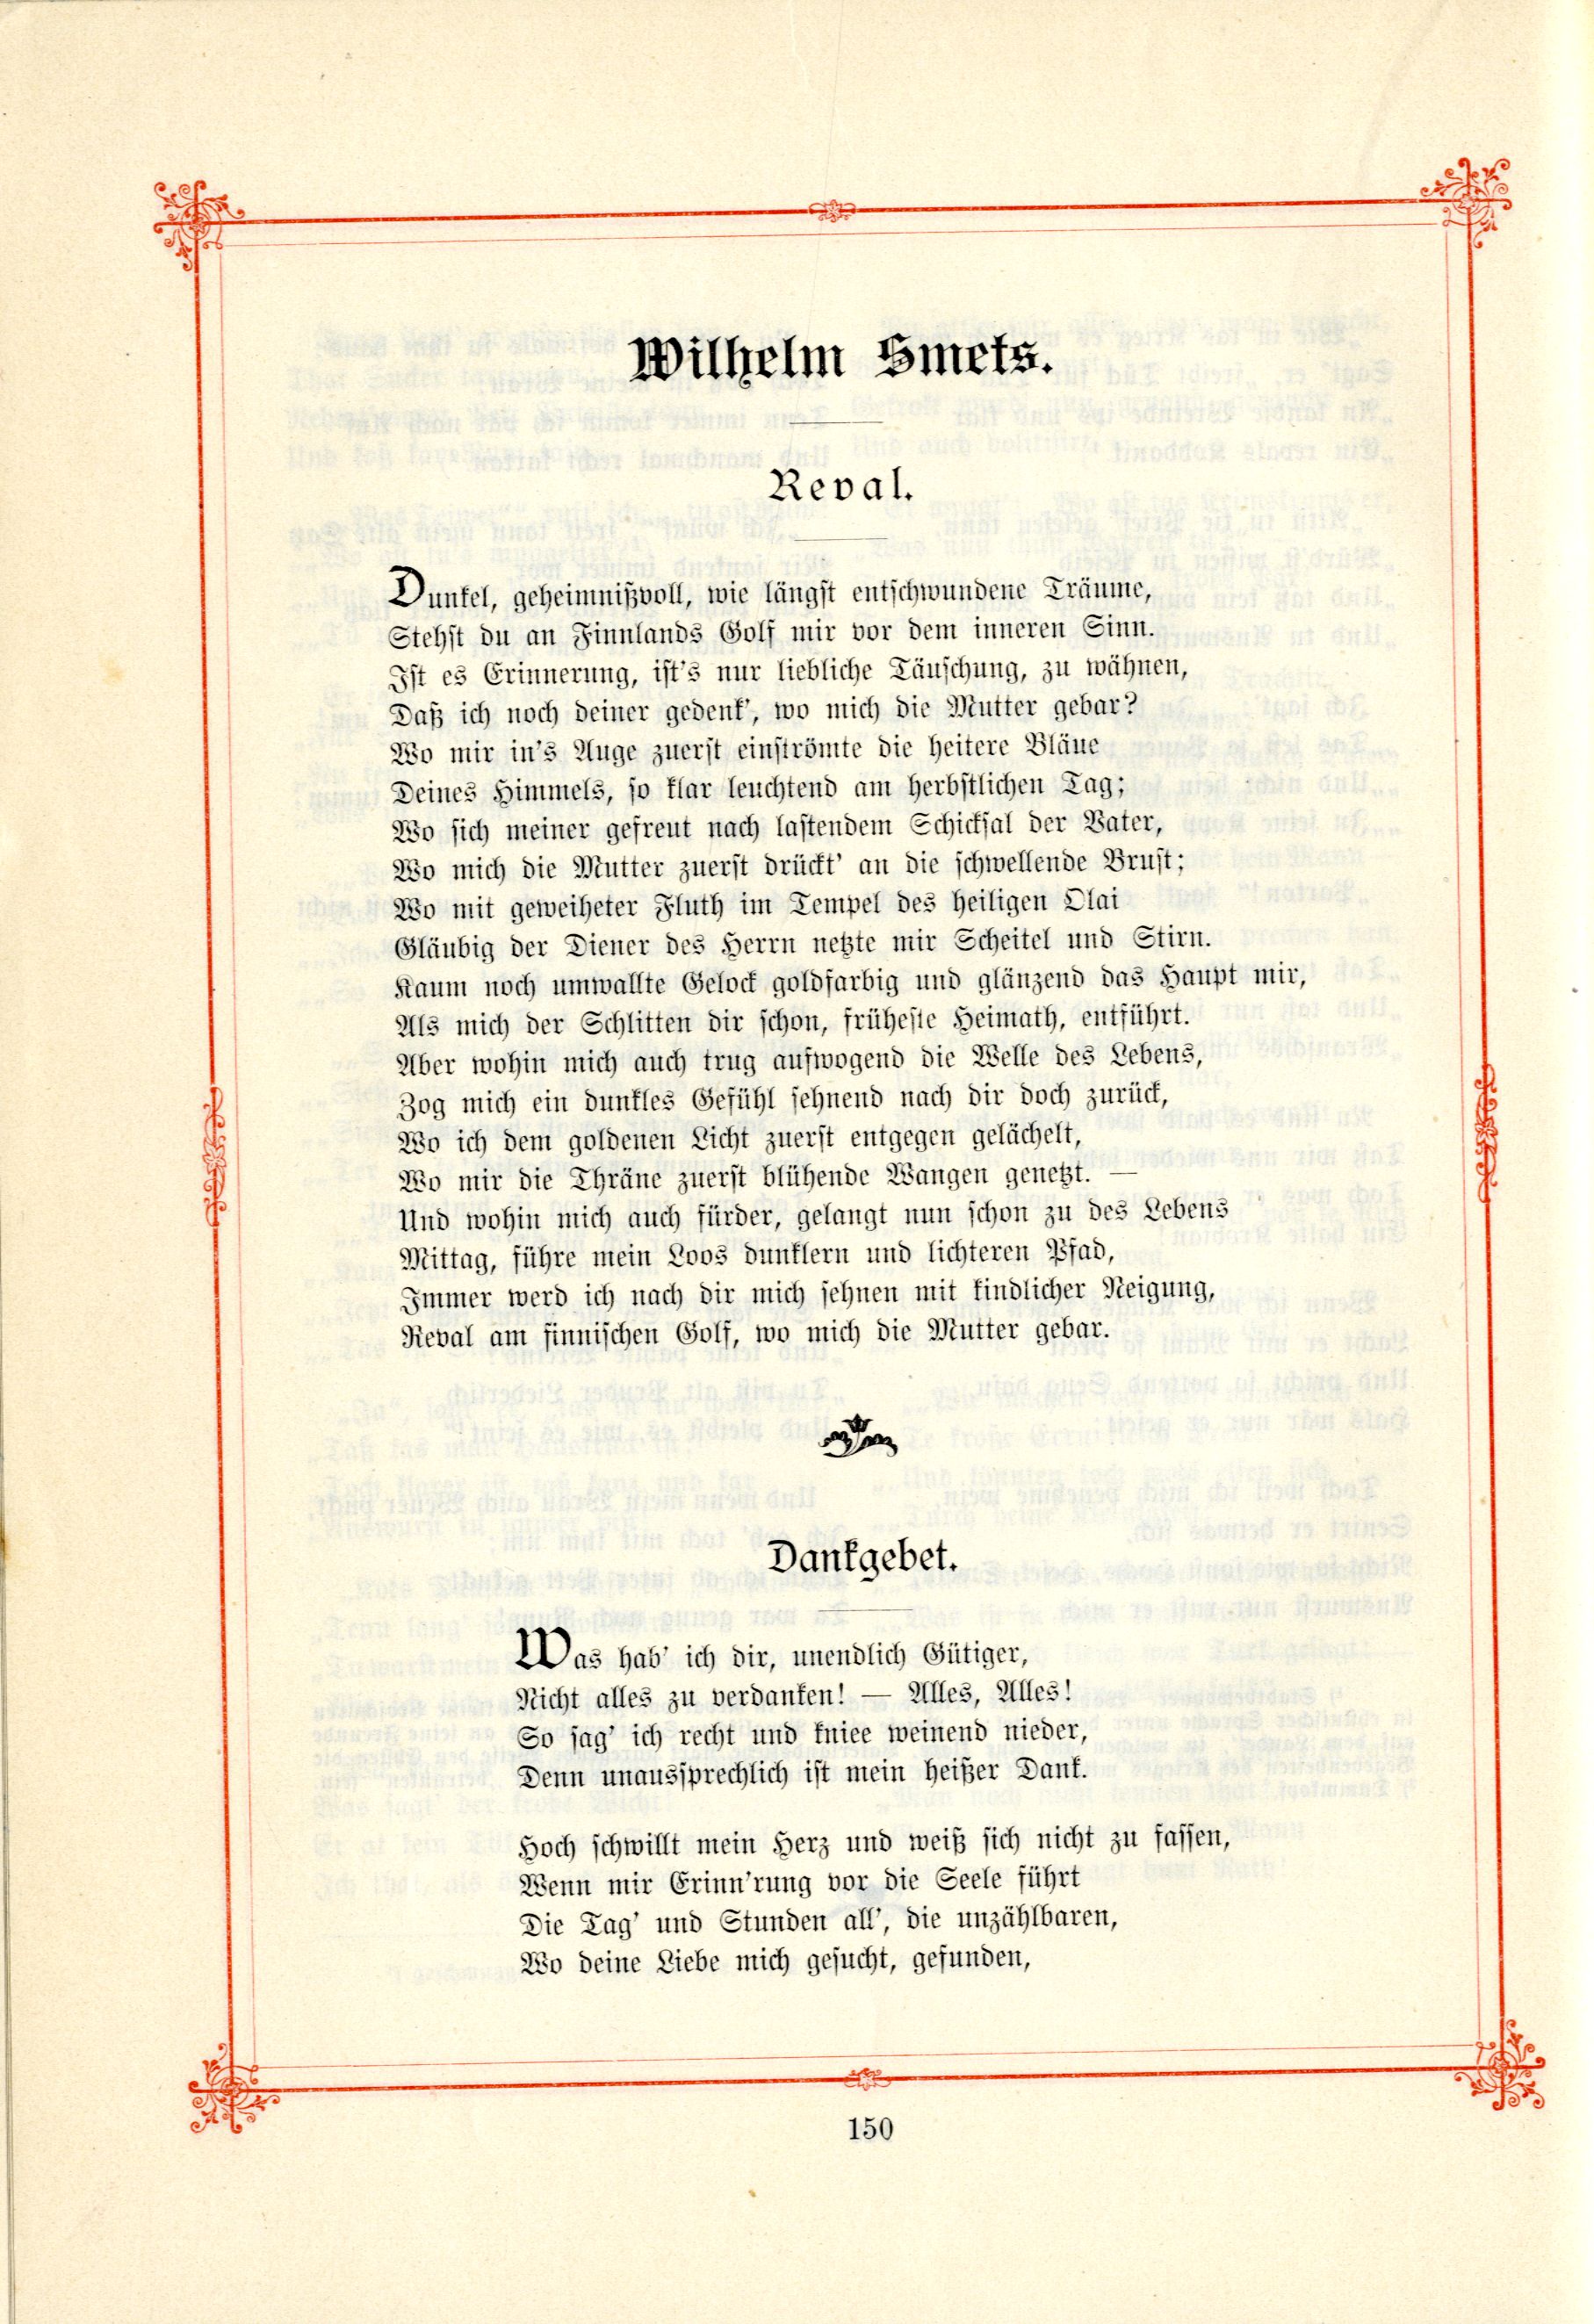 Das Baltische Dichterbuch (1895) | 196. (150) Main body of text